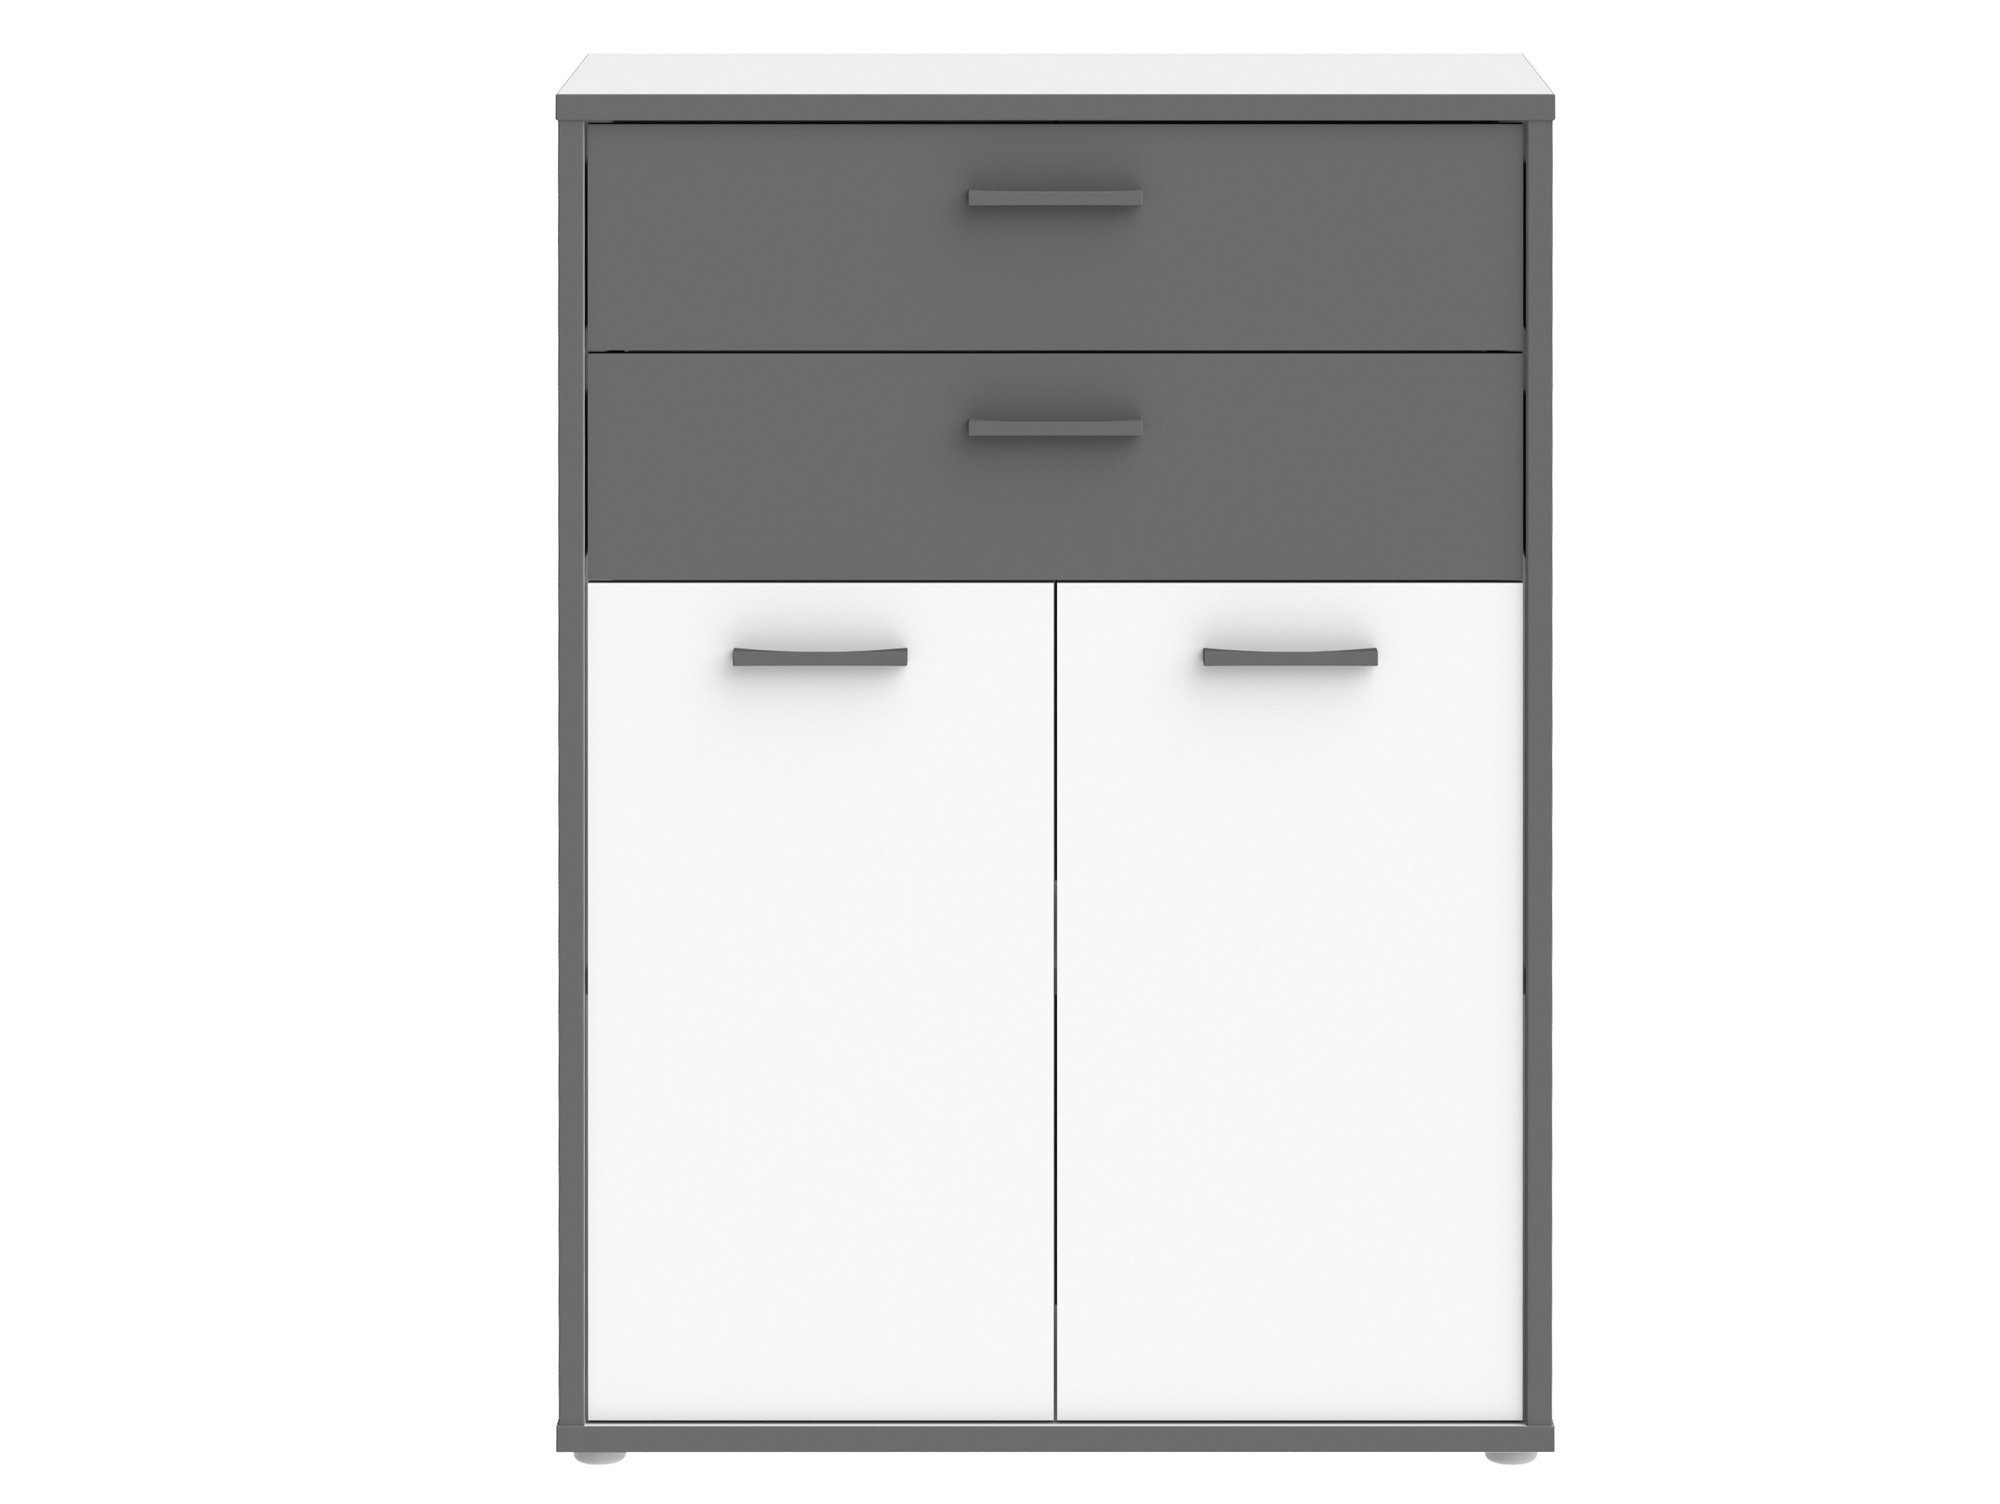 Büroschrank Bücherregal, KALINA Moebel-Eins Material weiss/grau II, Dekorspanplatte,